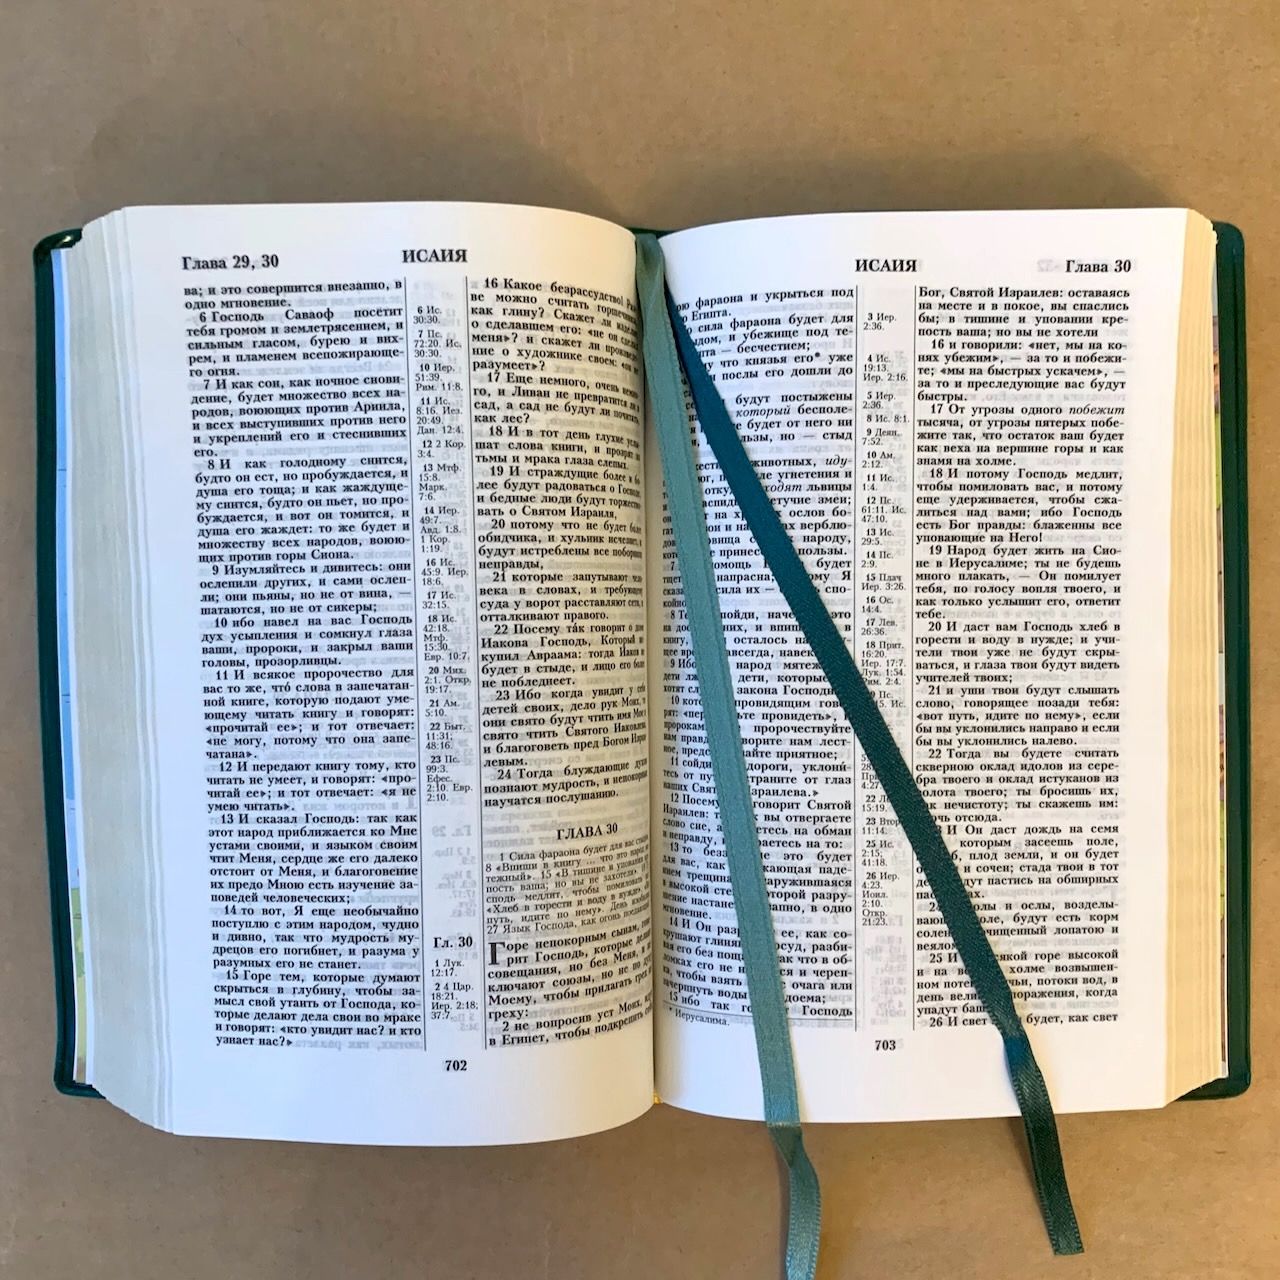 Библия 048 код E6 надпись "библия", переплет искусственной кожи, цвет зеленый, формат 125*190 мм, золотой обрез, синодальный перевод, параллельные места по центру страницы, 2 закладки, шрифт 10-11 кегель, цветные карты